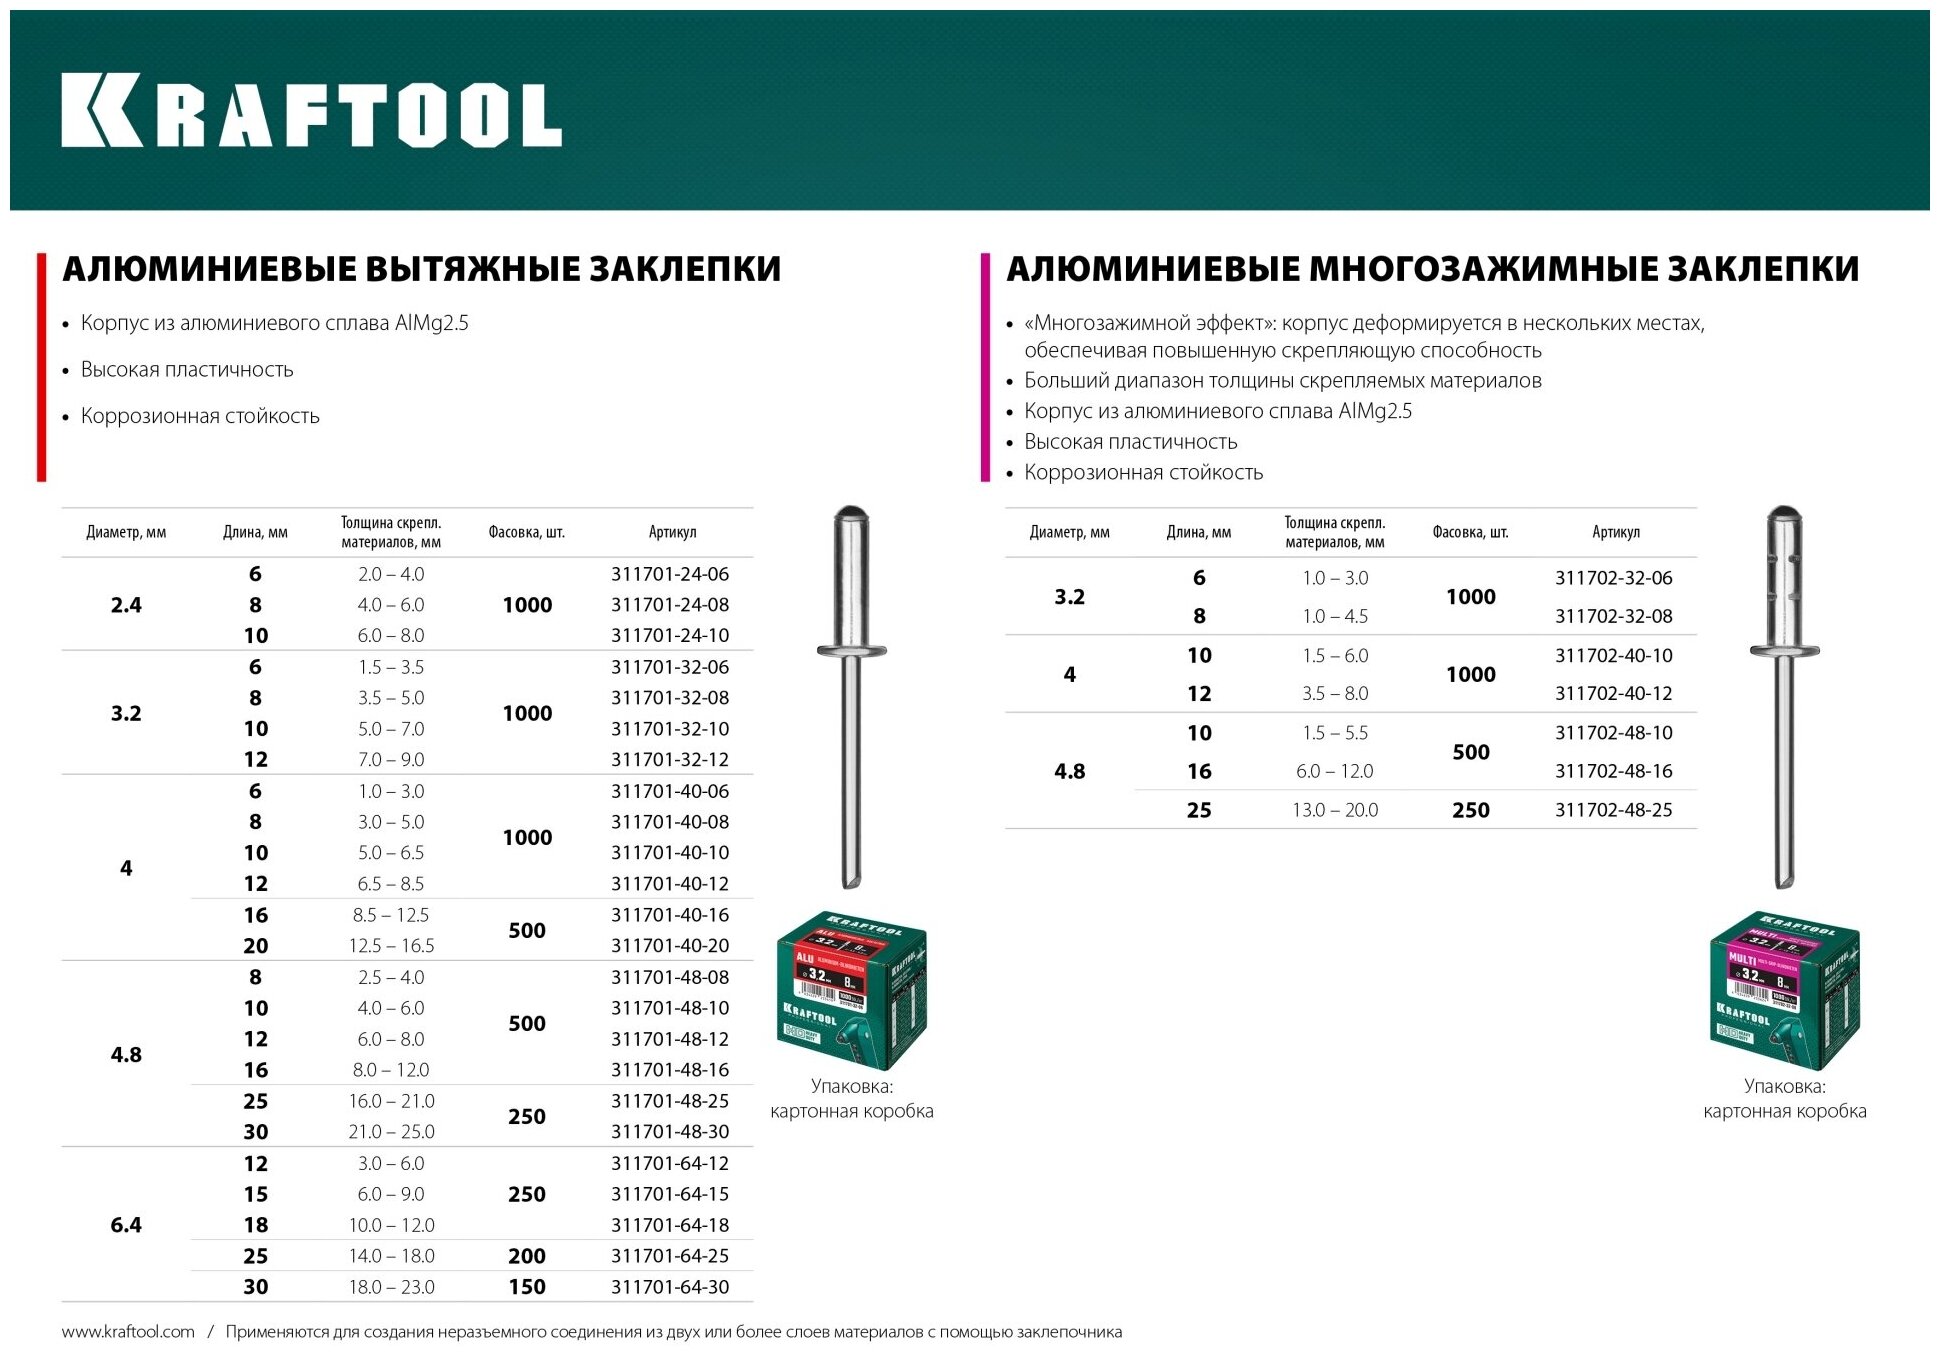 KRAFTOOL Multi Al5052, 4.8 х 16 мм, многозажимные алюминиевые заклепки, 500 шт (311702-48-16) - фотография № 2